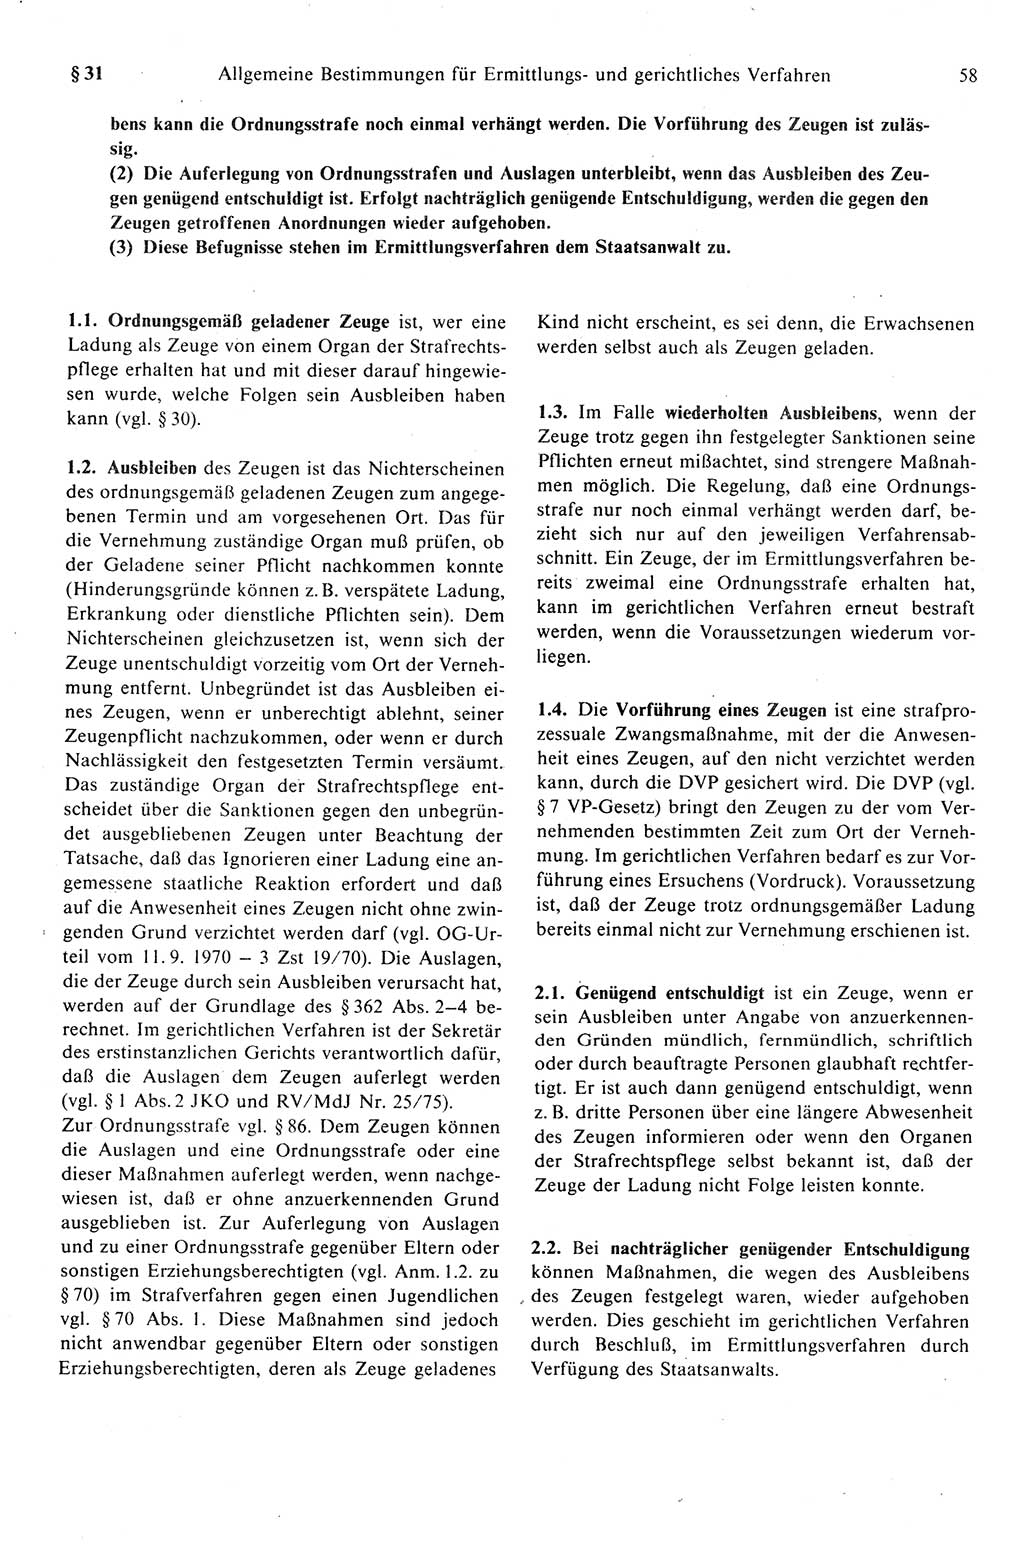 Strafprozeßrecht der DDR (Deutsche Demokratische Republik), Kommentar zur Strafprozeßordnung (StPO) 1989, Seite 58 (Strafprozeßr. DDR Komm. StPO 1989, S. 58)